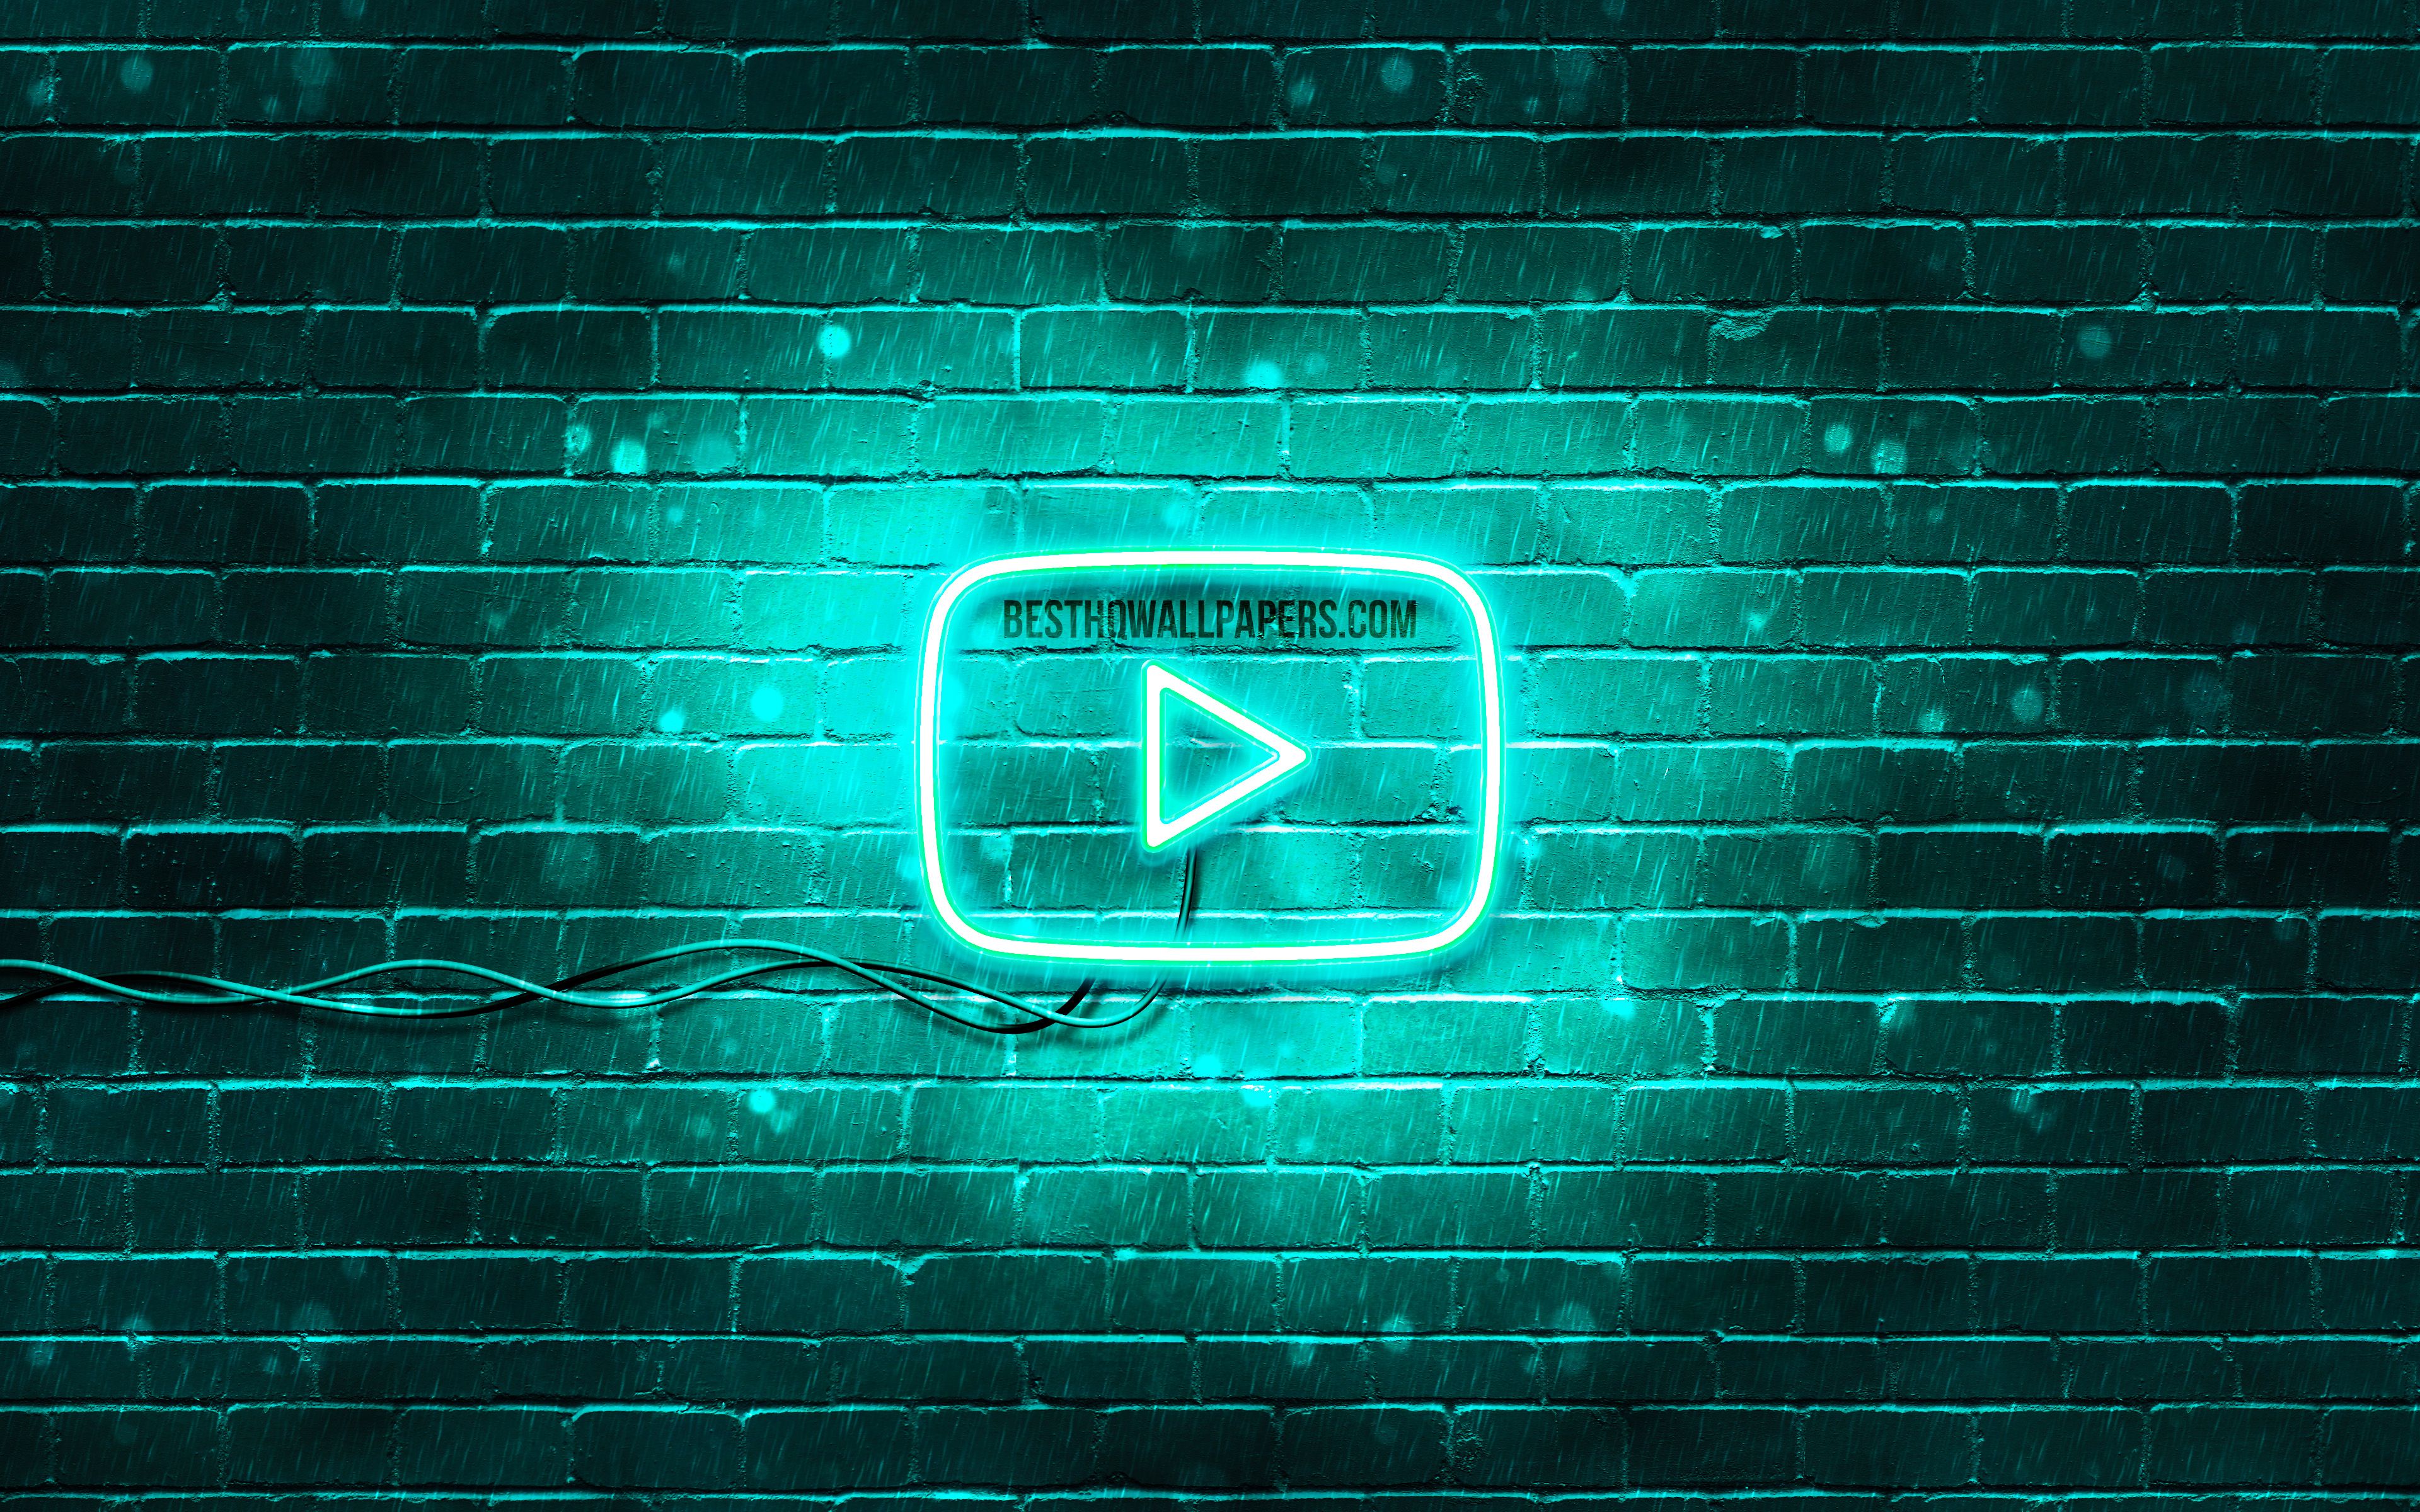 YouTube Logo Wallpaper